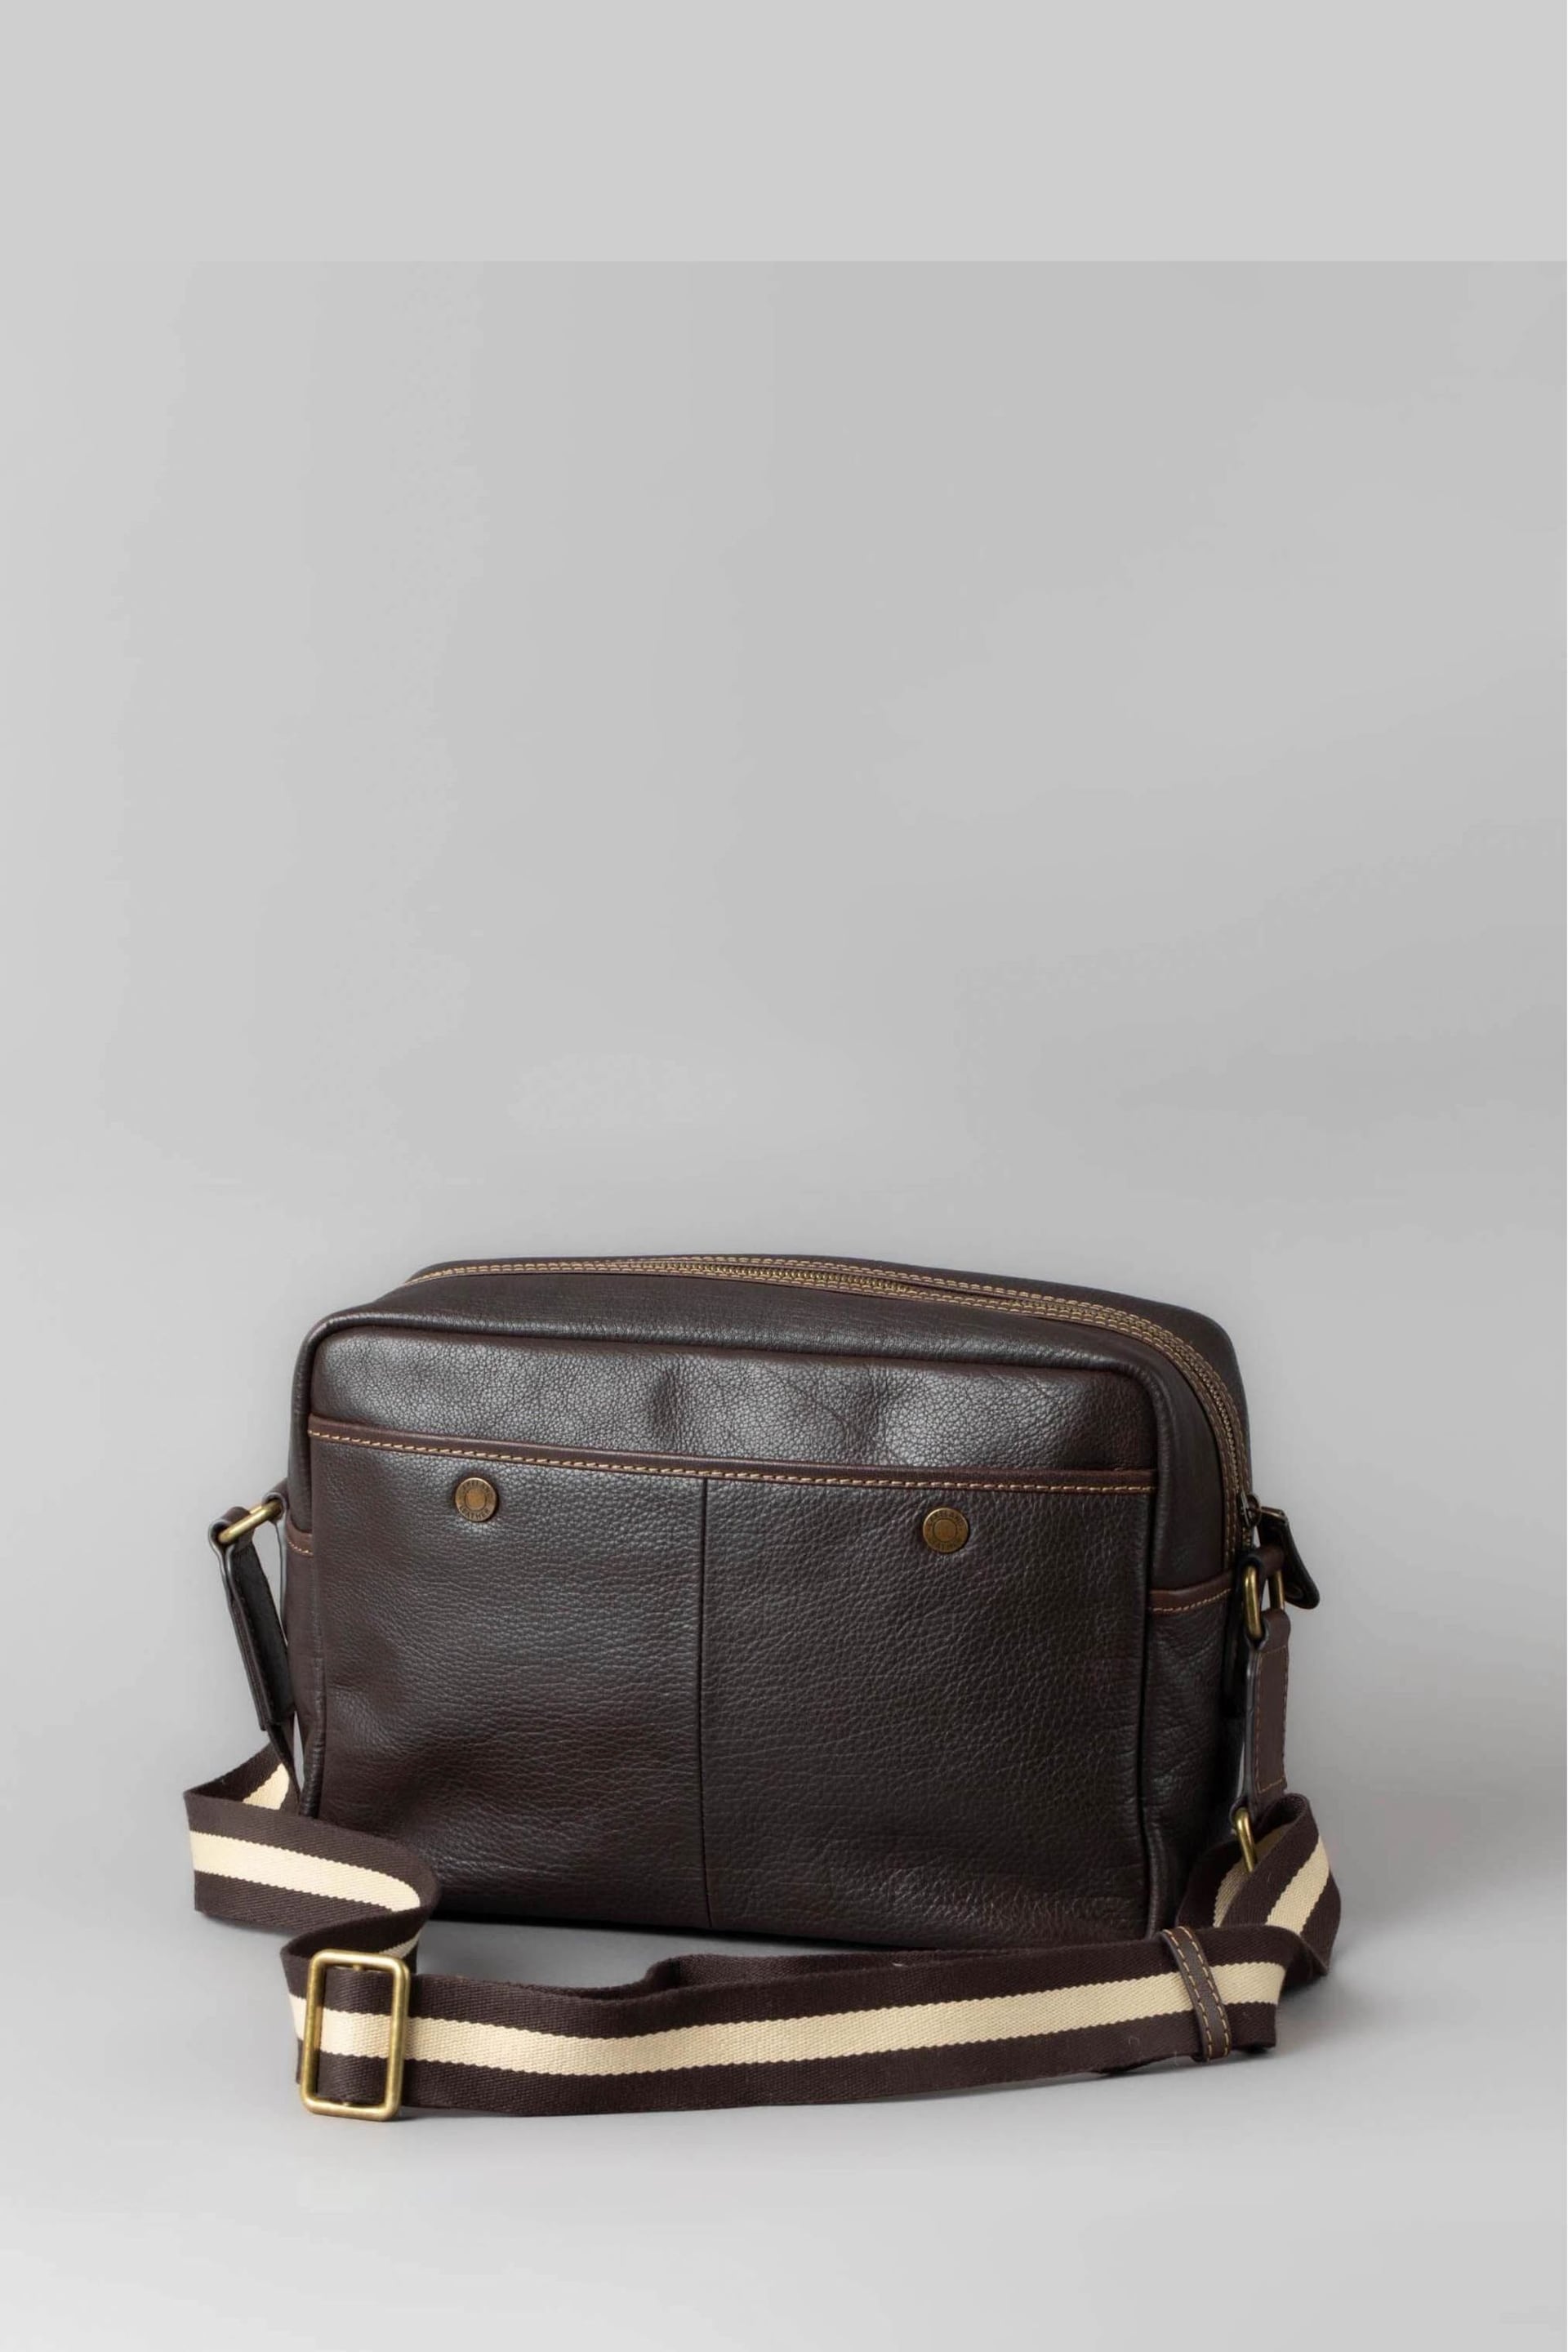 Lakeland Leather Kelsick Leather Messenger Brown Bag - Image 4 of 9